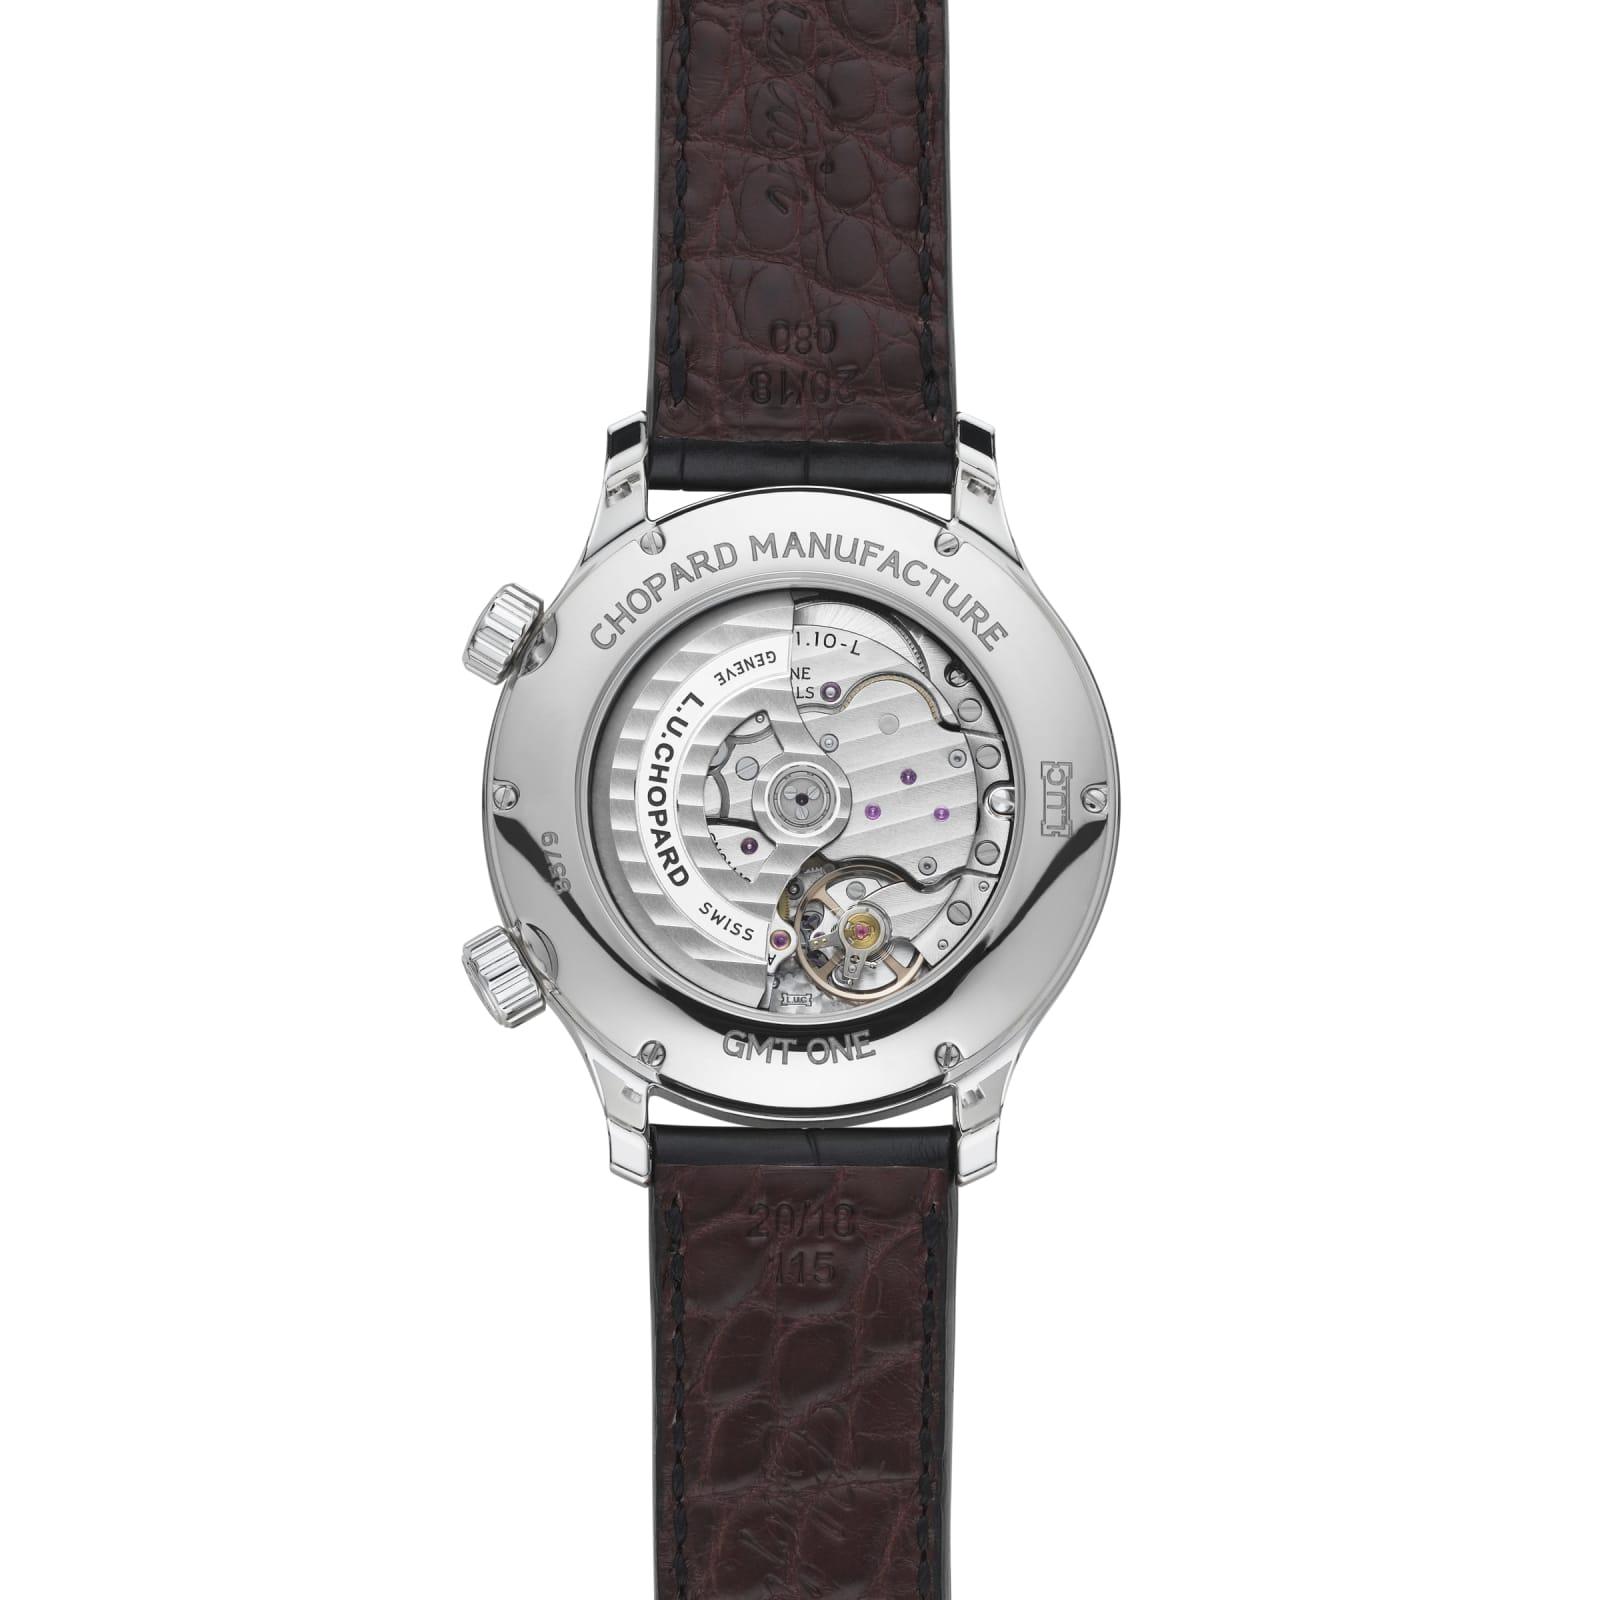 Chopard L.U.C Classic GMT Black Dial Black Leather Men's Watch